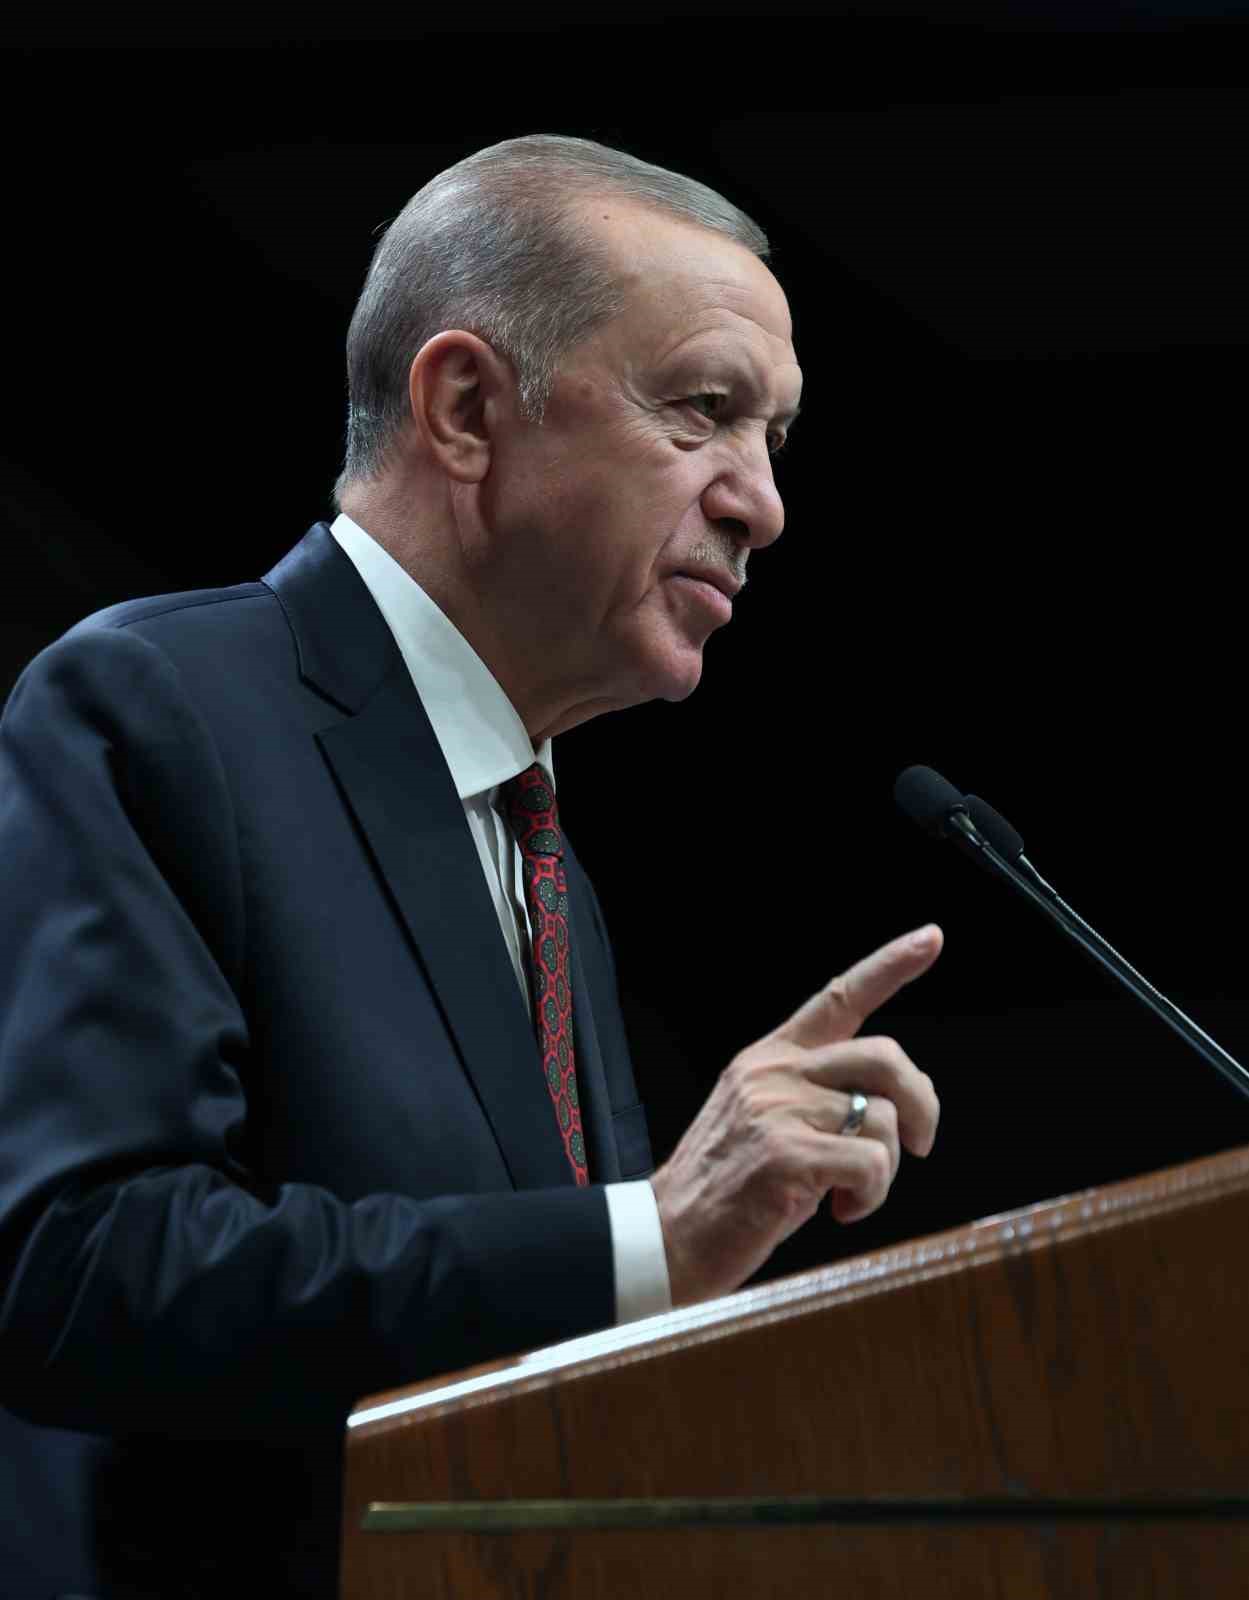 Cumhurbaşkanı Erdoğan: “Holokost utancı Avrupalı liderleri adeta esir almış durumda”